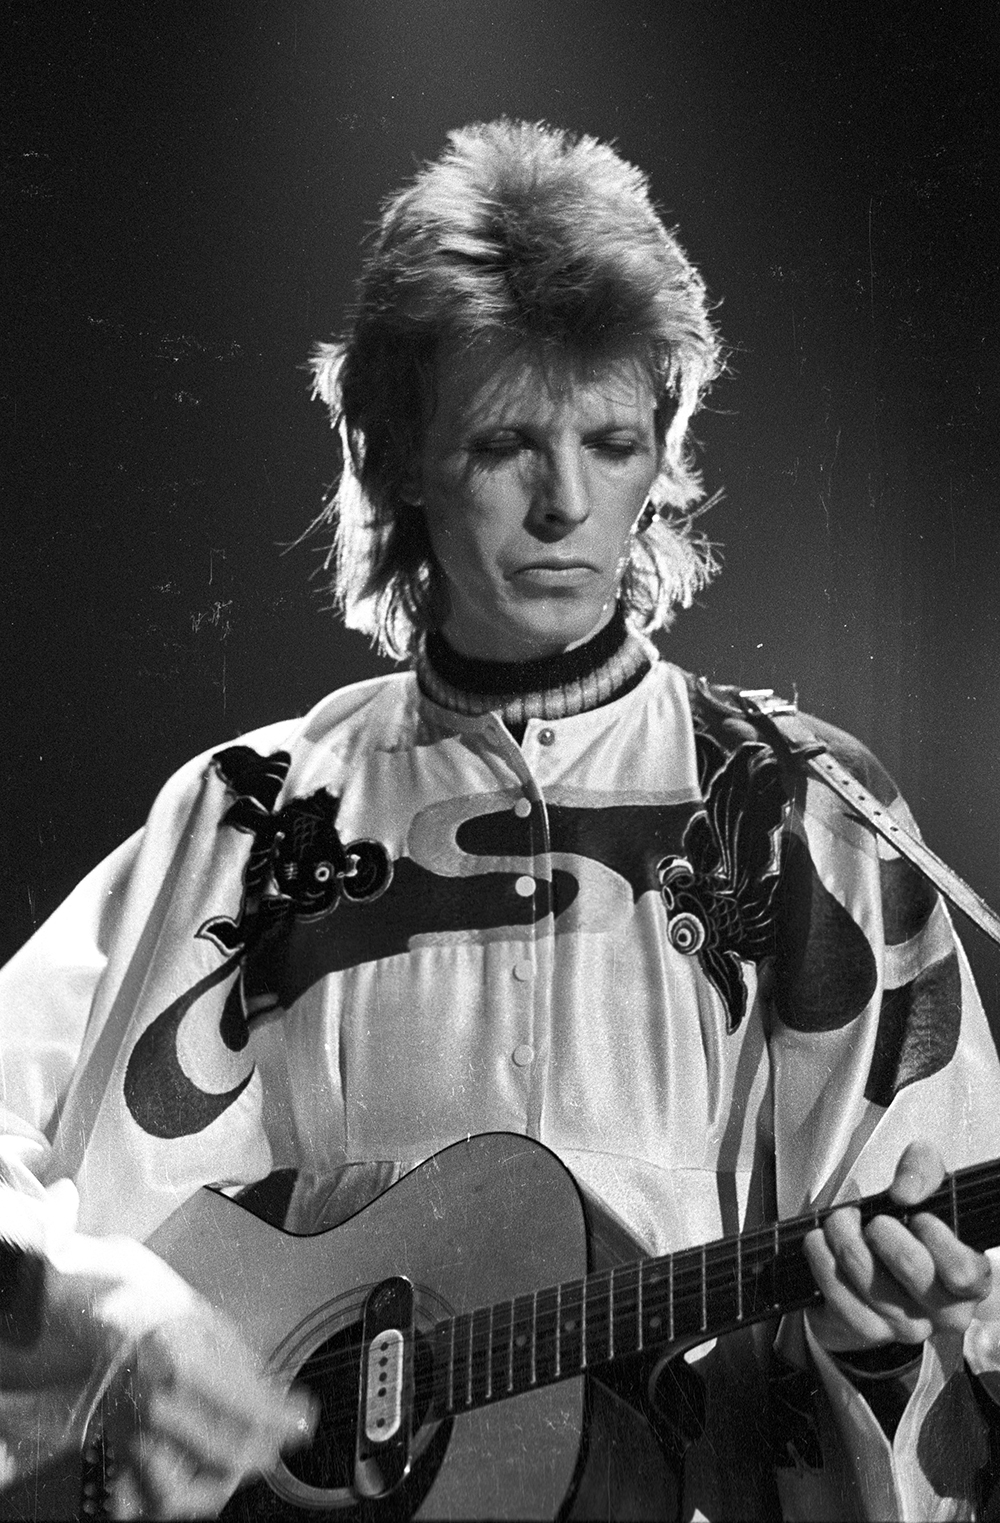 Performing in Los Angeles as Ziggy Stardust.